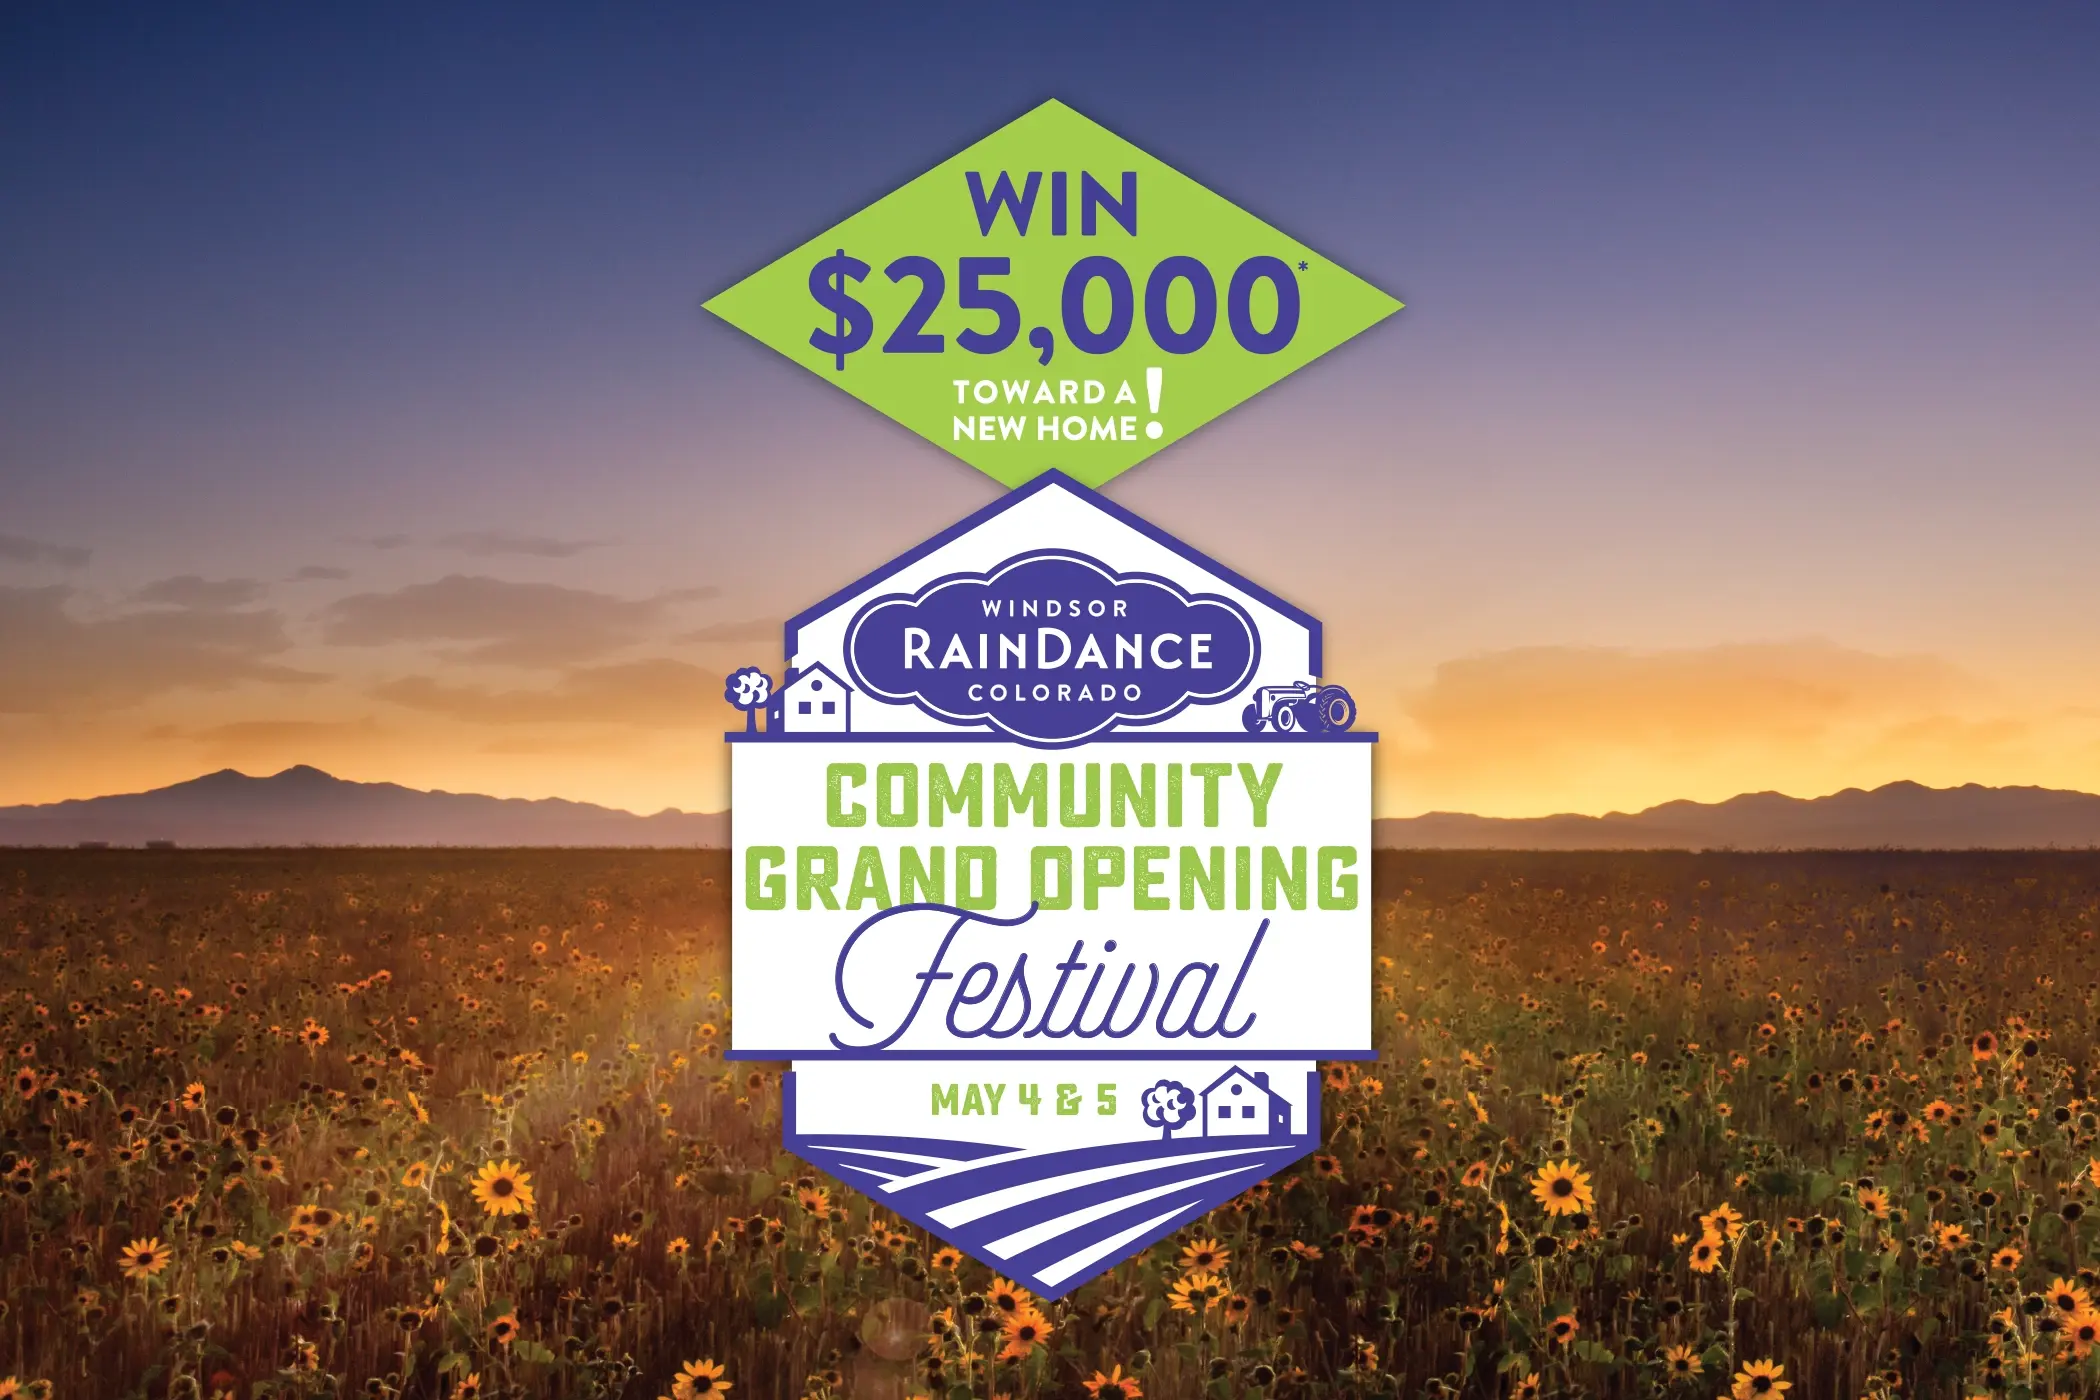 RainDance community grand opening